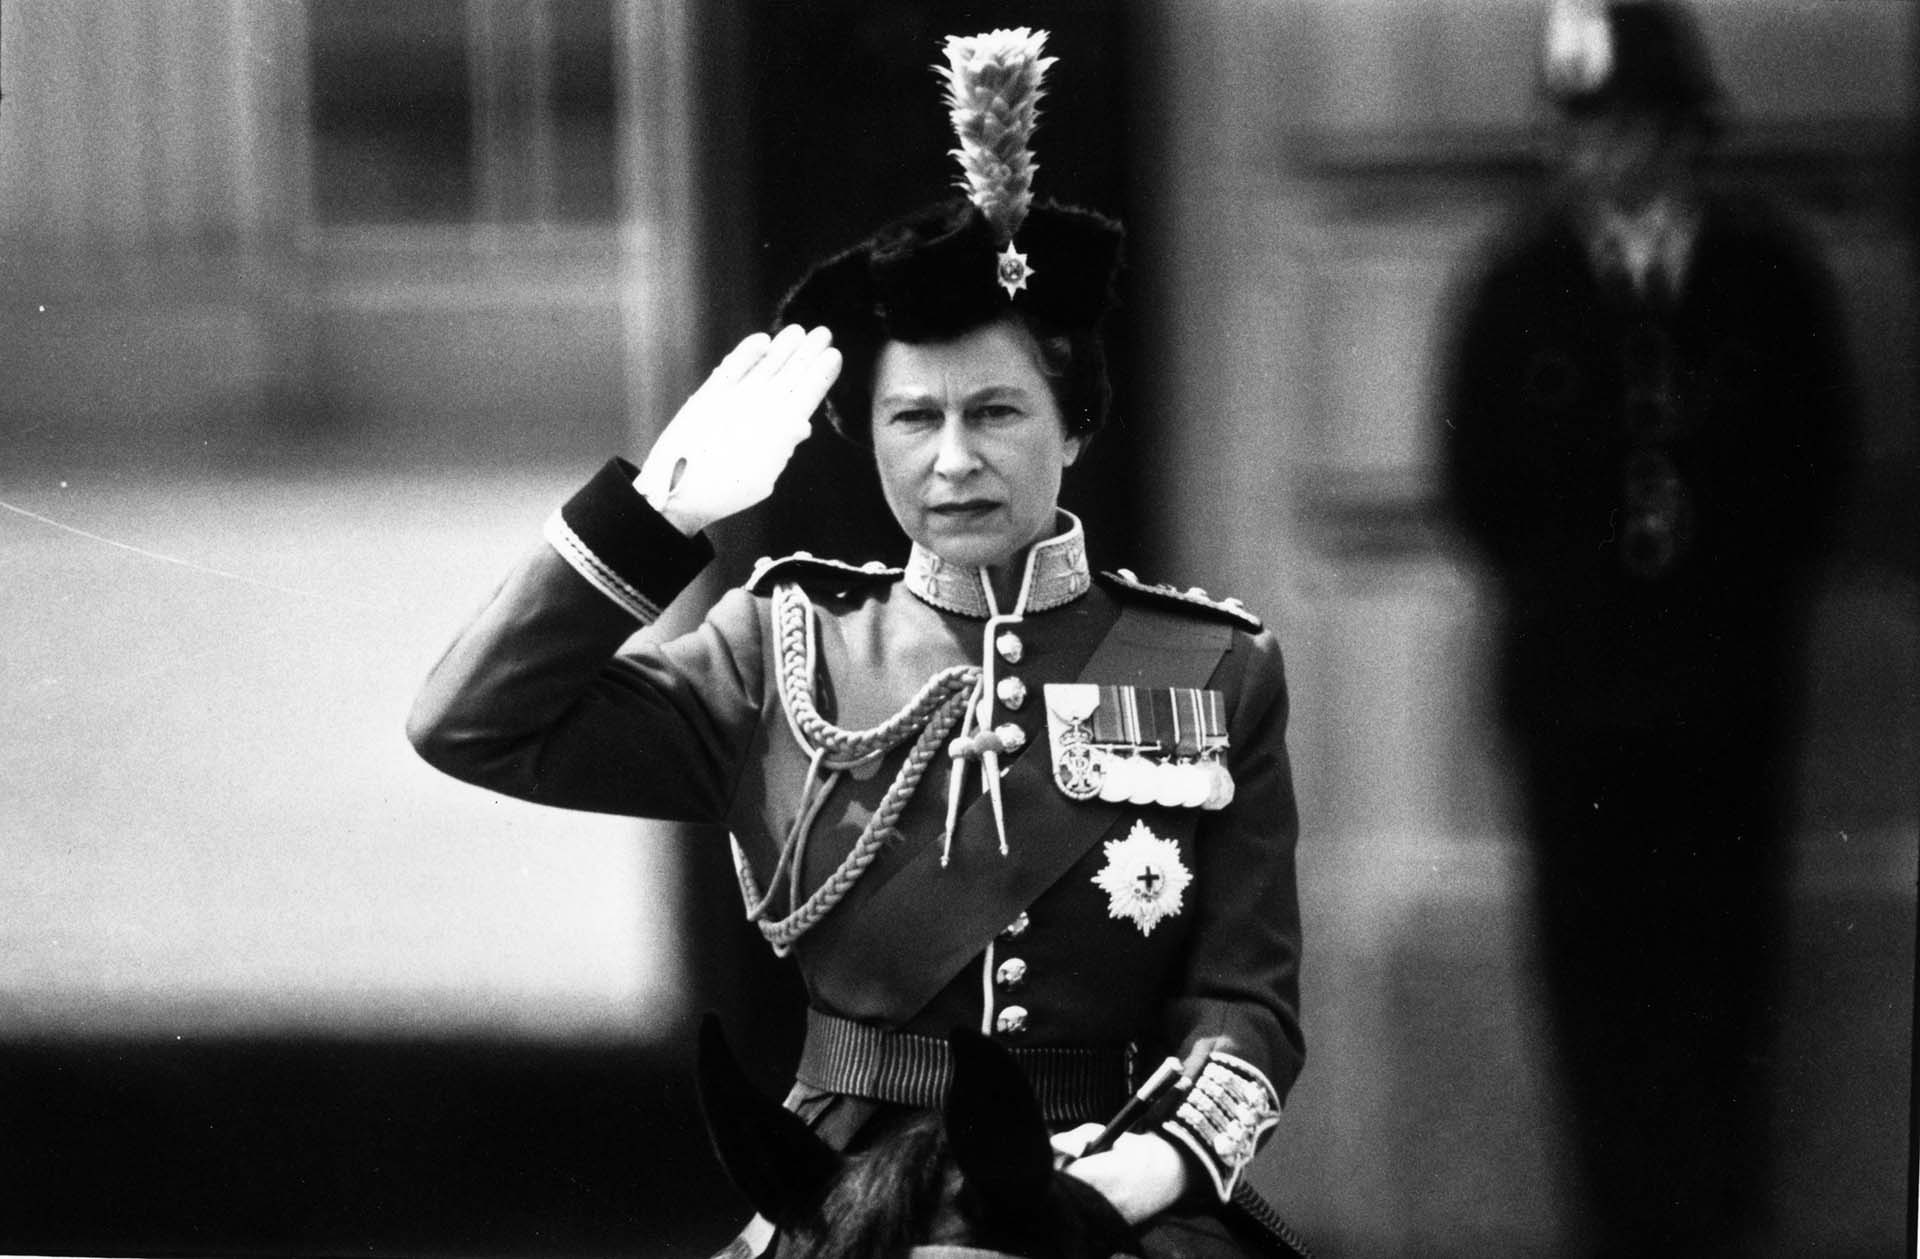 17 de junio de 1974:  La Reina Isabel II haciendo el saludo real durante la ceremonia de la Trooping of the Colour en el Horse Guard's Parade, Londres.  (Foto de Aubrey Hart/Evening Standard/Getty Images)